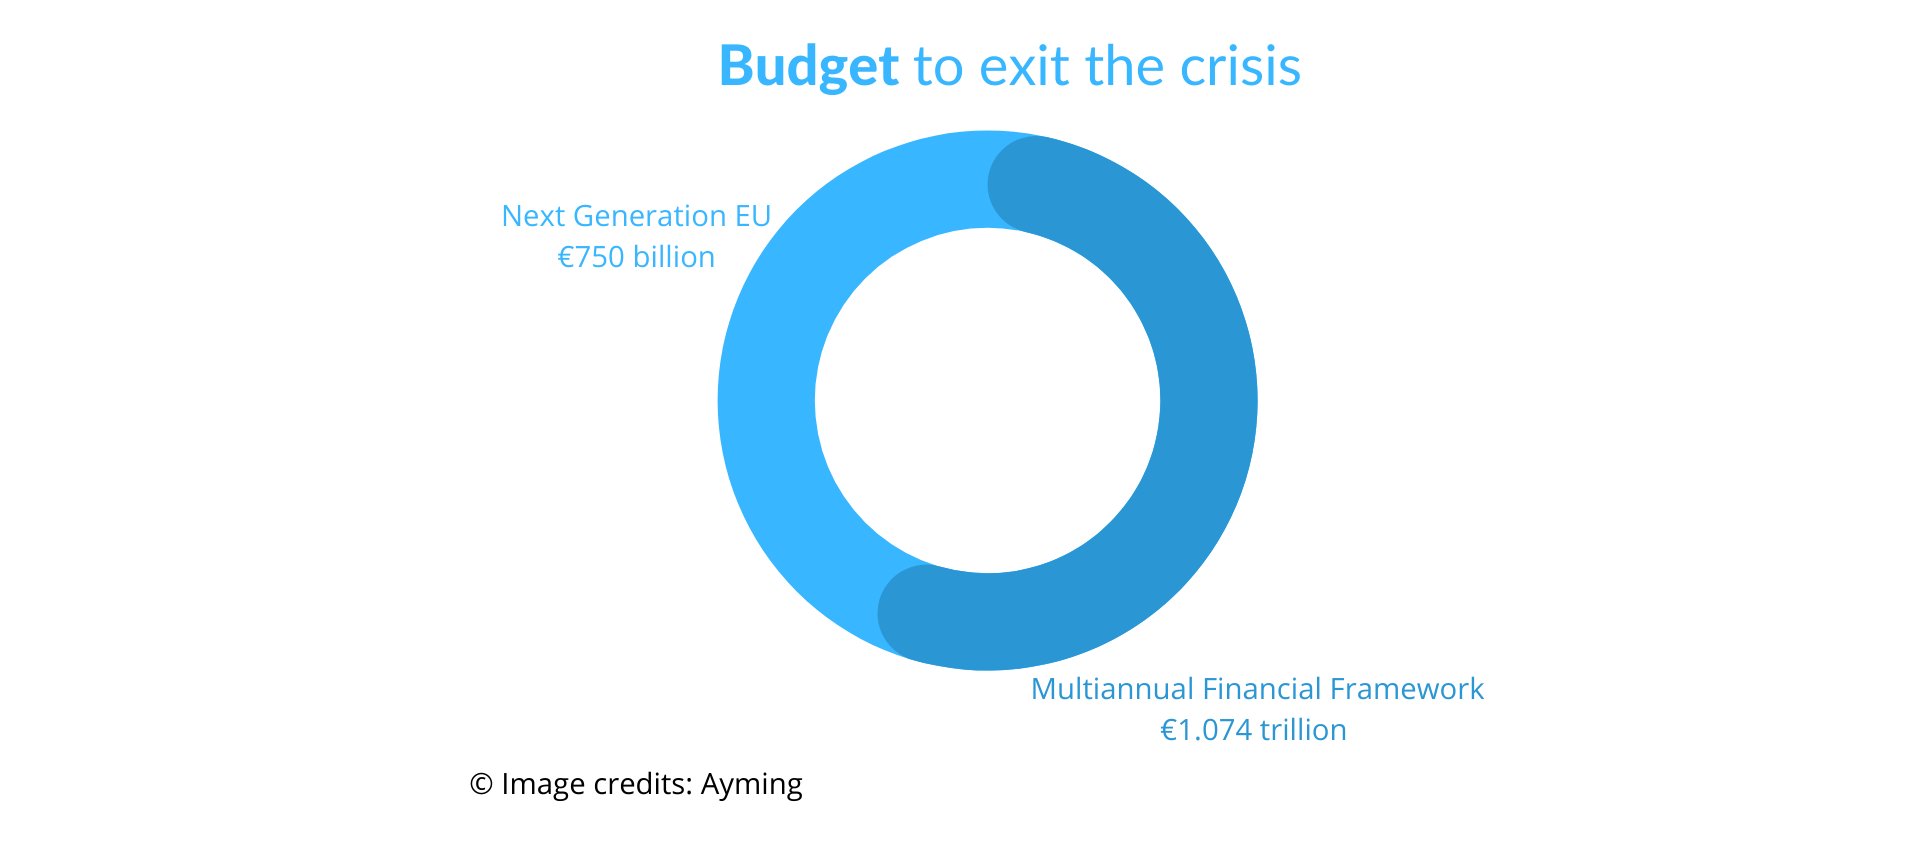 Next generation EU budget